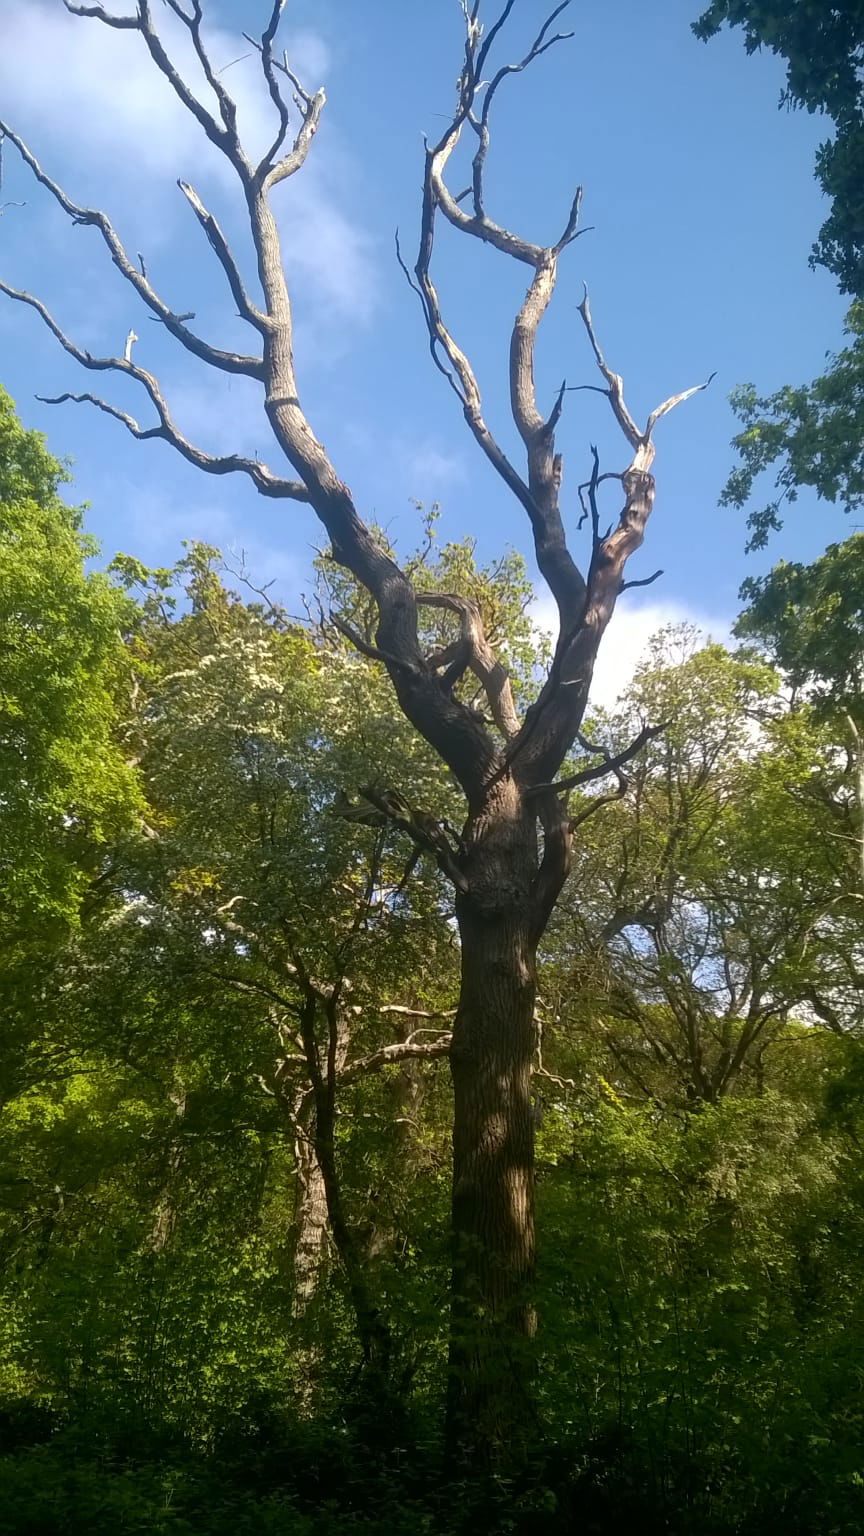 Towering dead oak